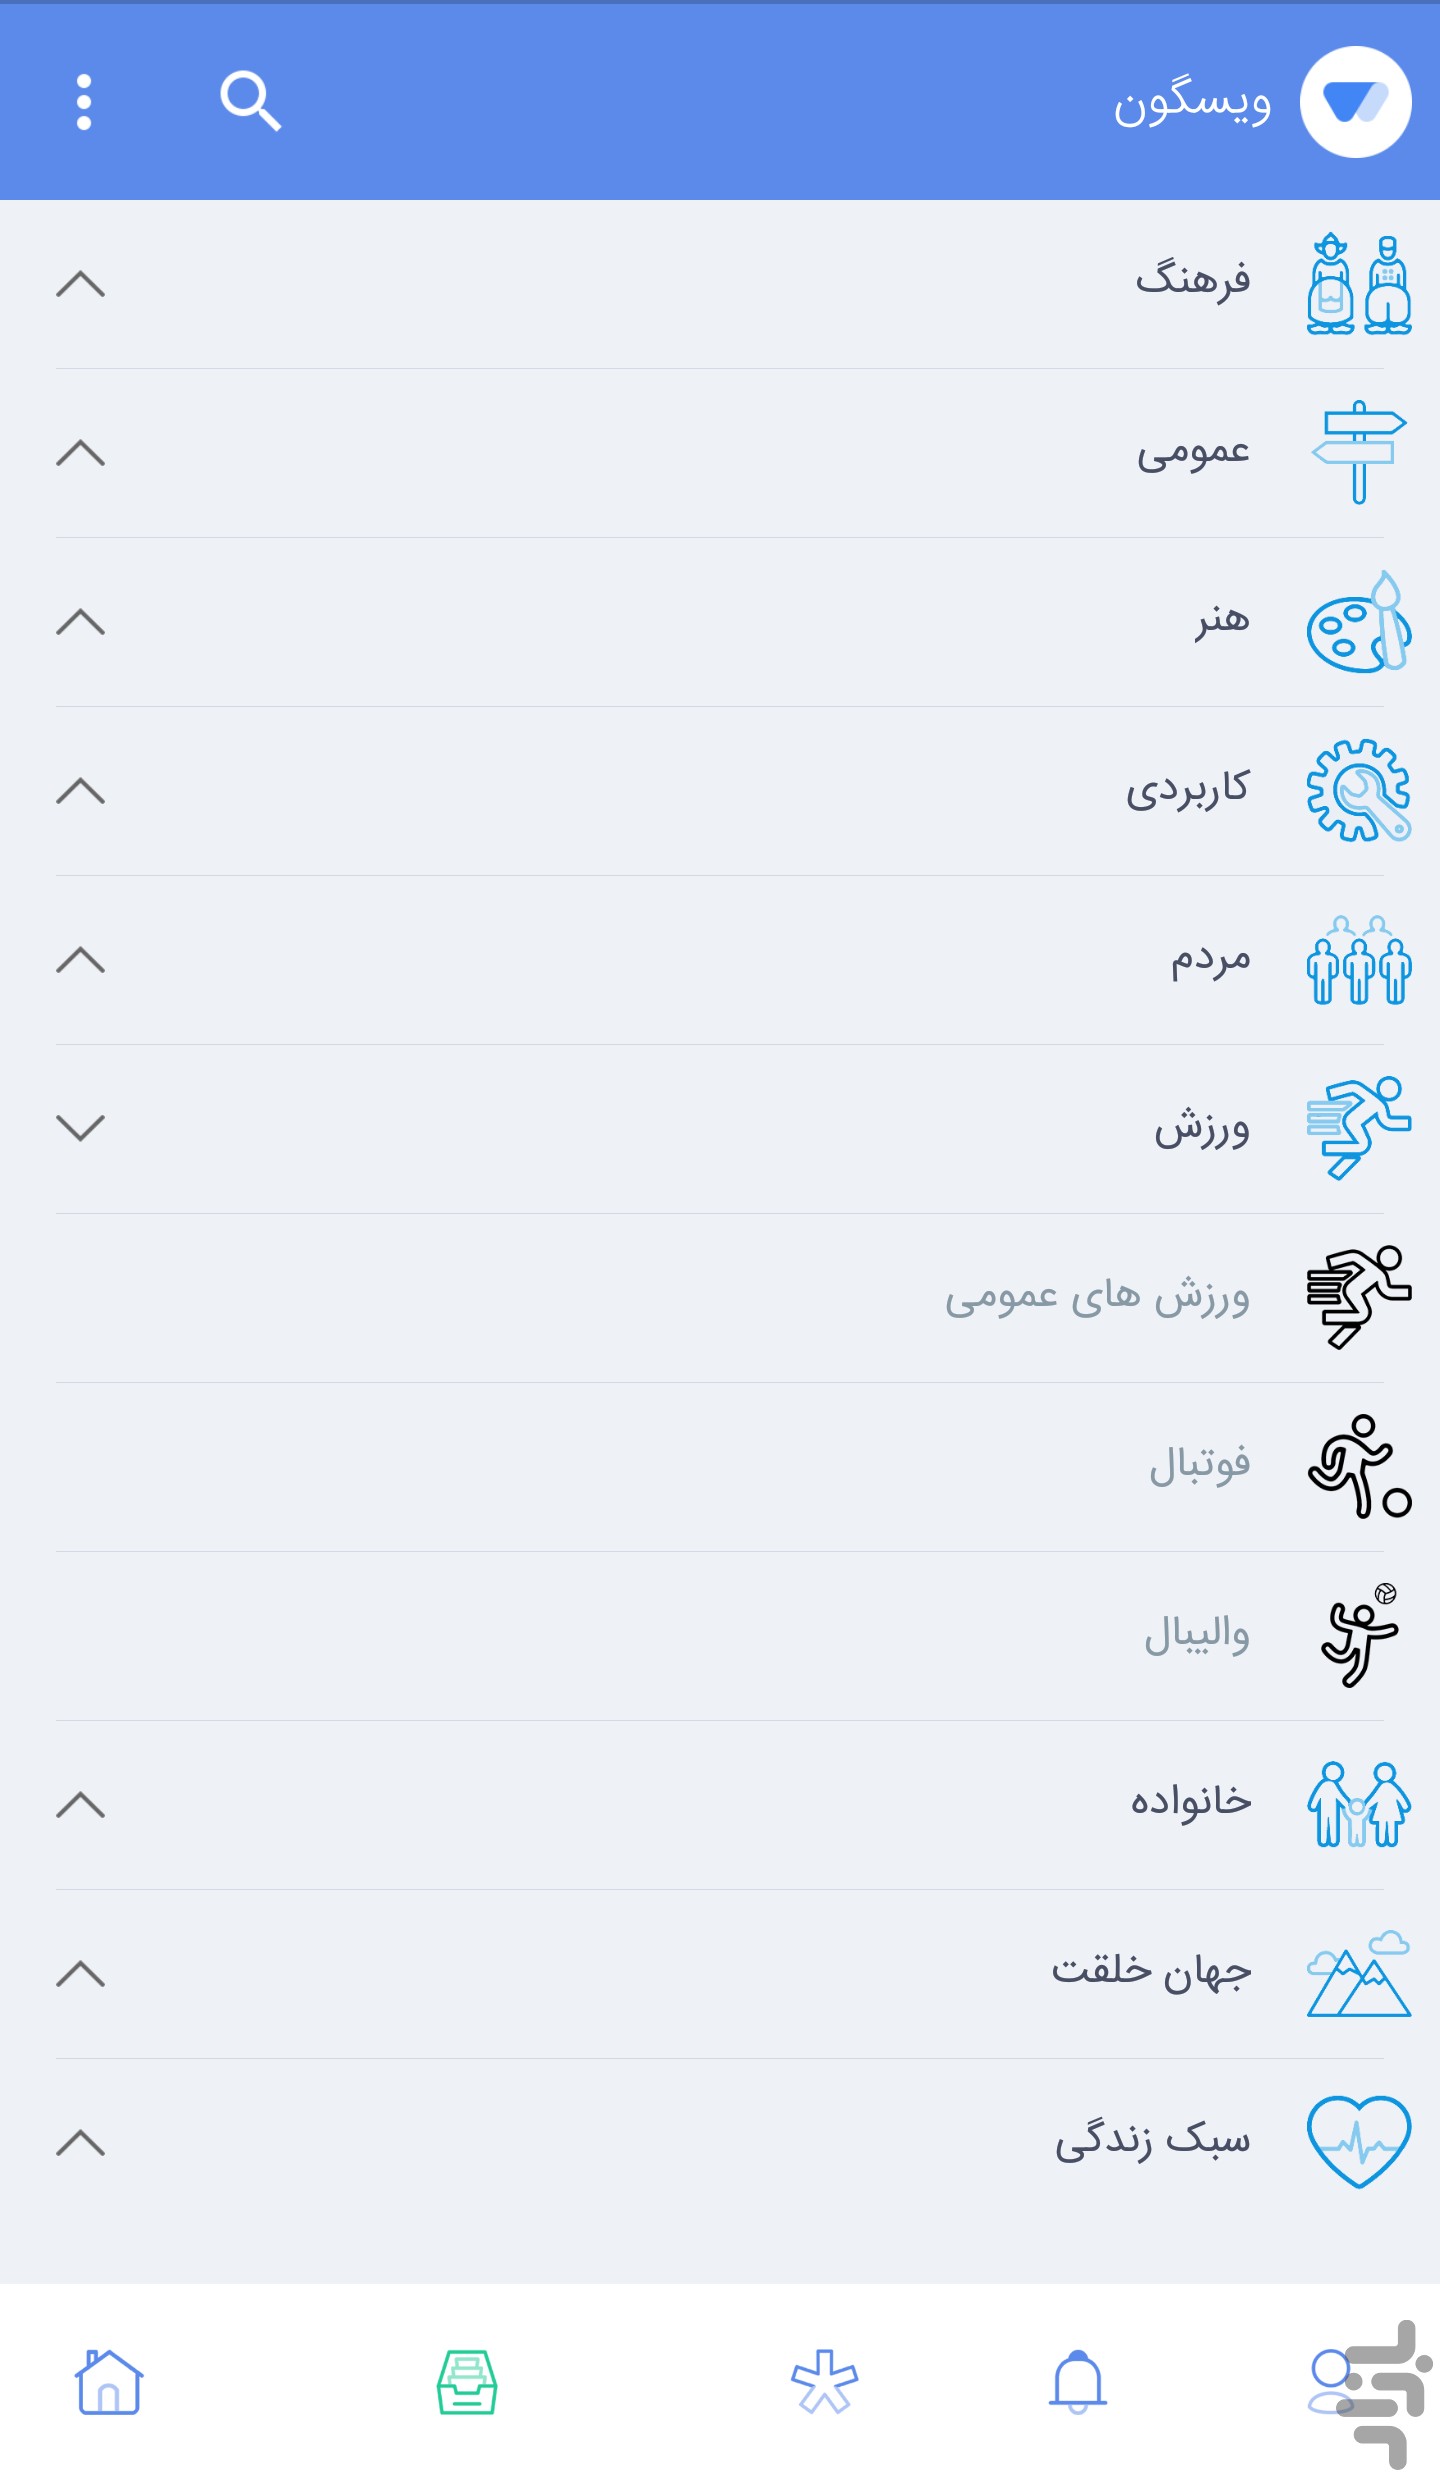 ویسگون؛ اپلیکیشن ایرانی اشتراک تصاویر